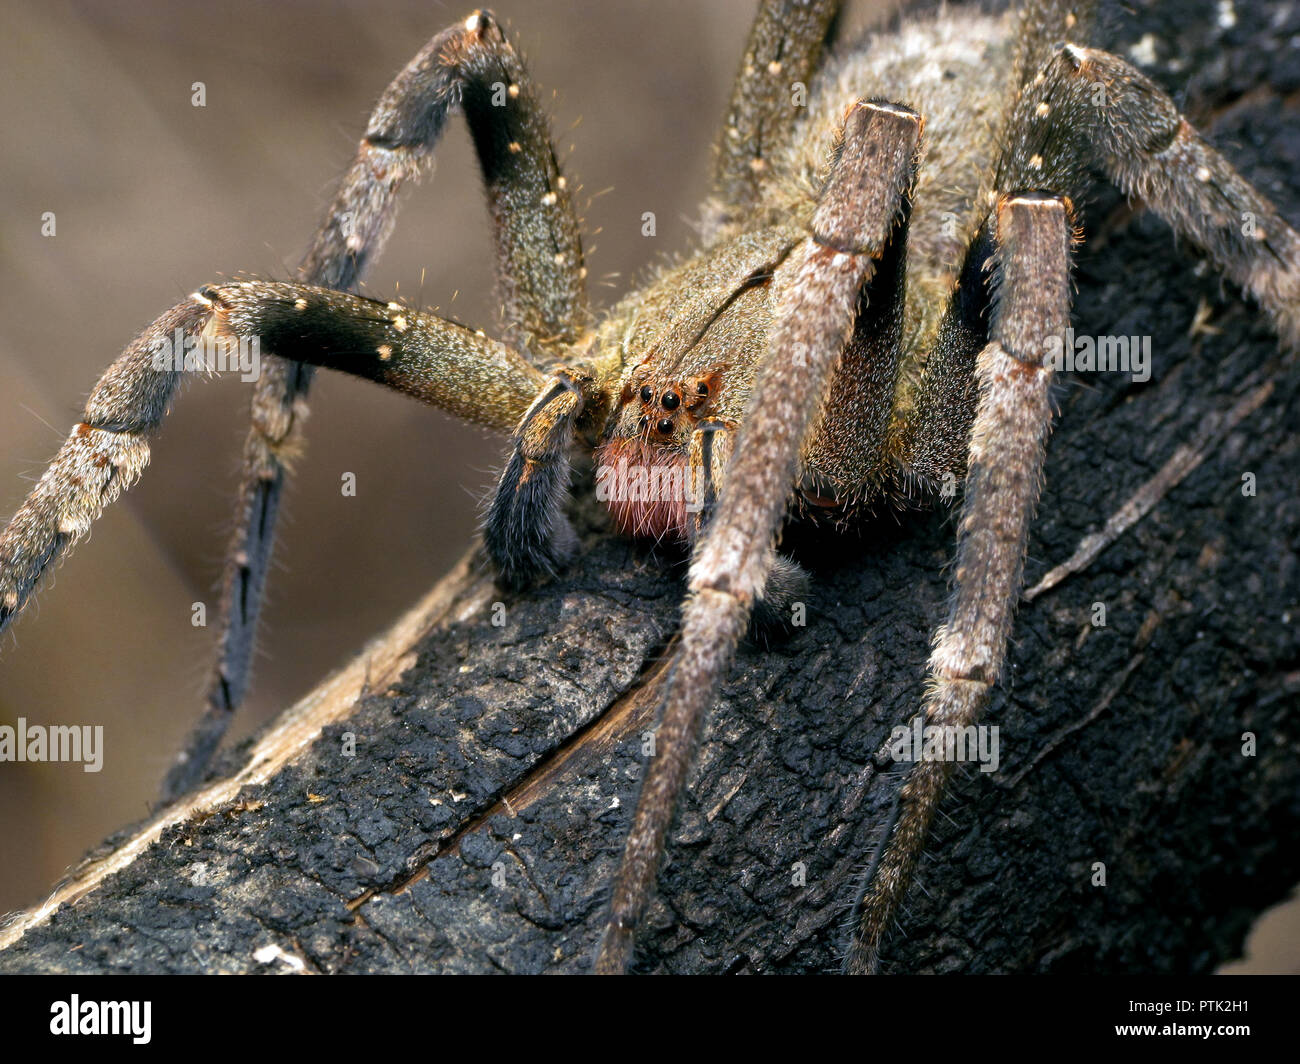 L'errance du Brésil (araignée Phoneutria) sur une branche, araignées venimeux d'Amérique du sud, également connu comme Armadeira, avec quelques accidents de morsure mortelle. Banque D'Images